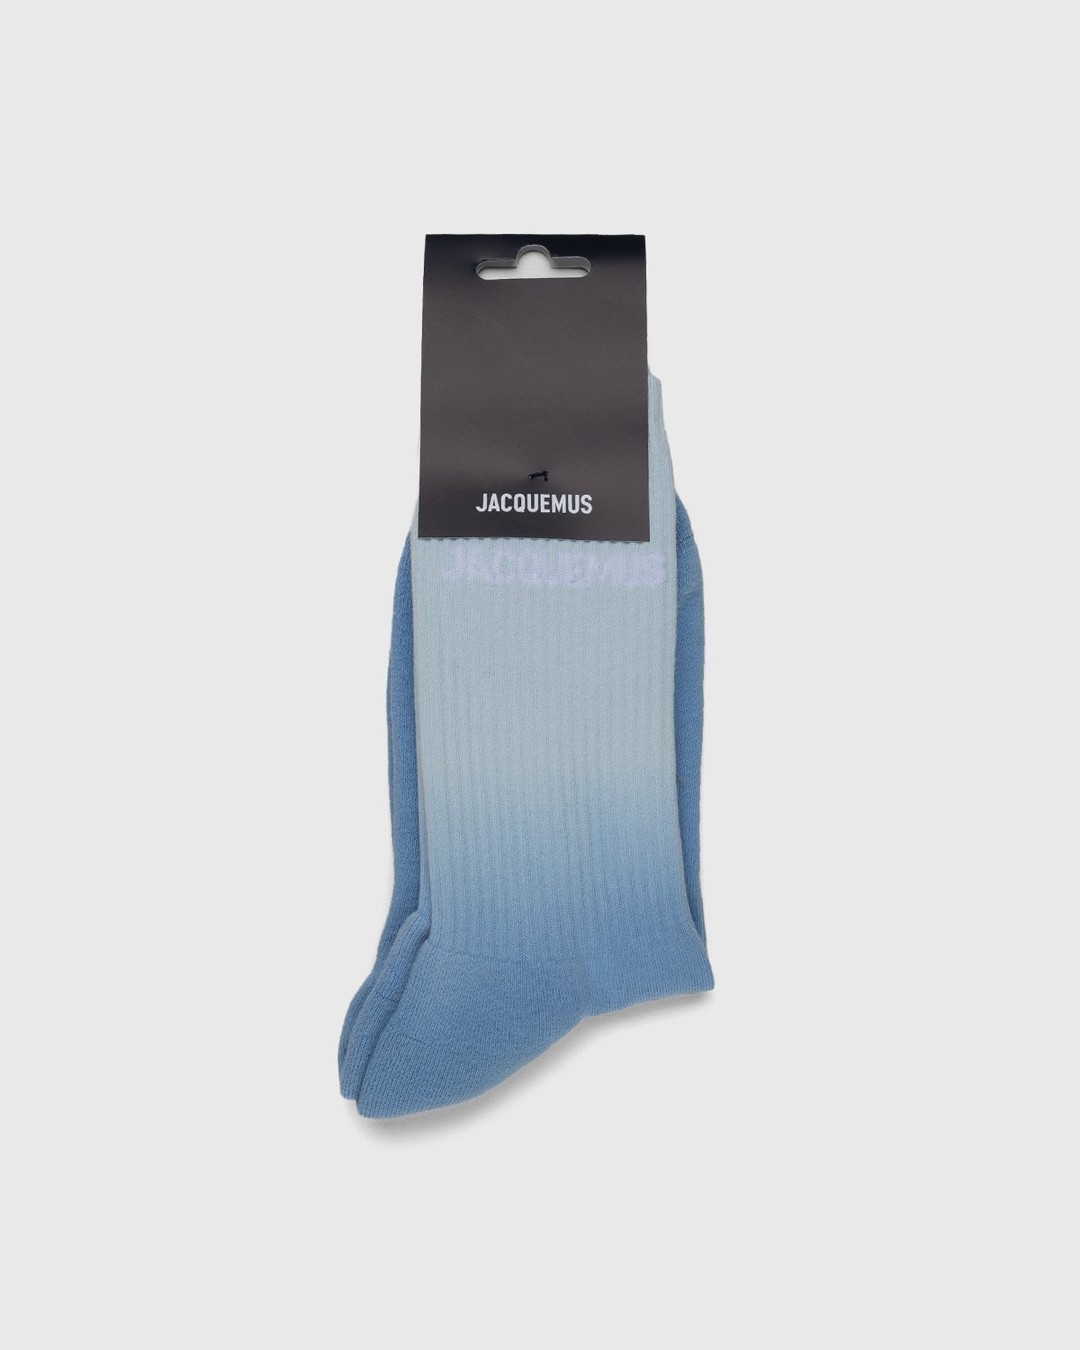 JACQUEMUS – Les Chaussettes Moisson Light Blue - Socks - Blue - Image 1